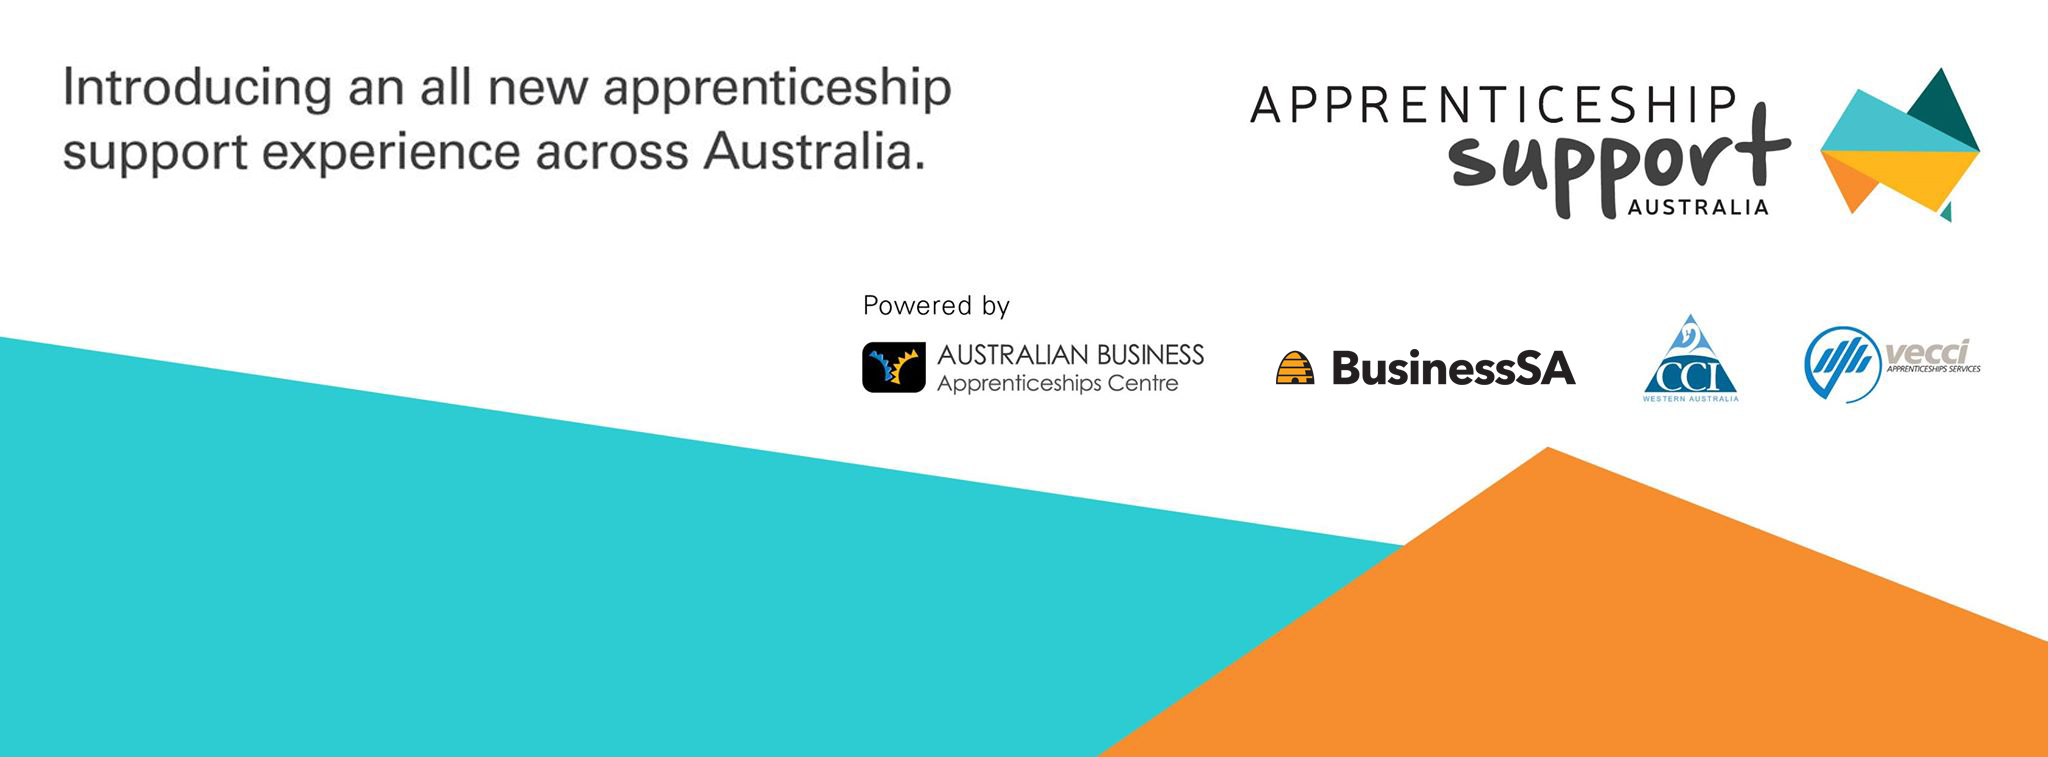 apprenticeship support australia